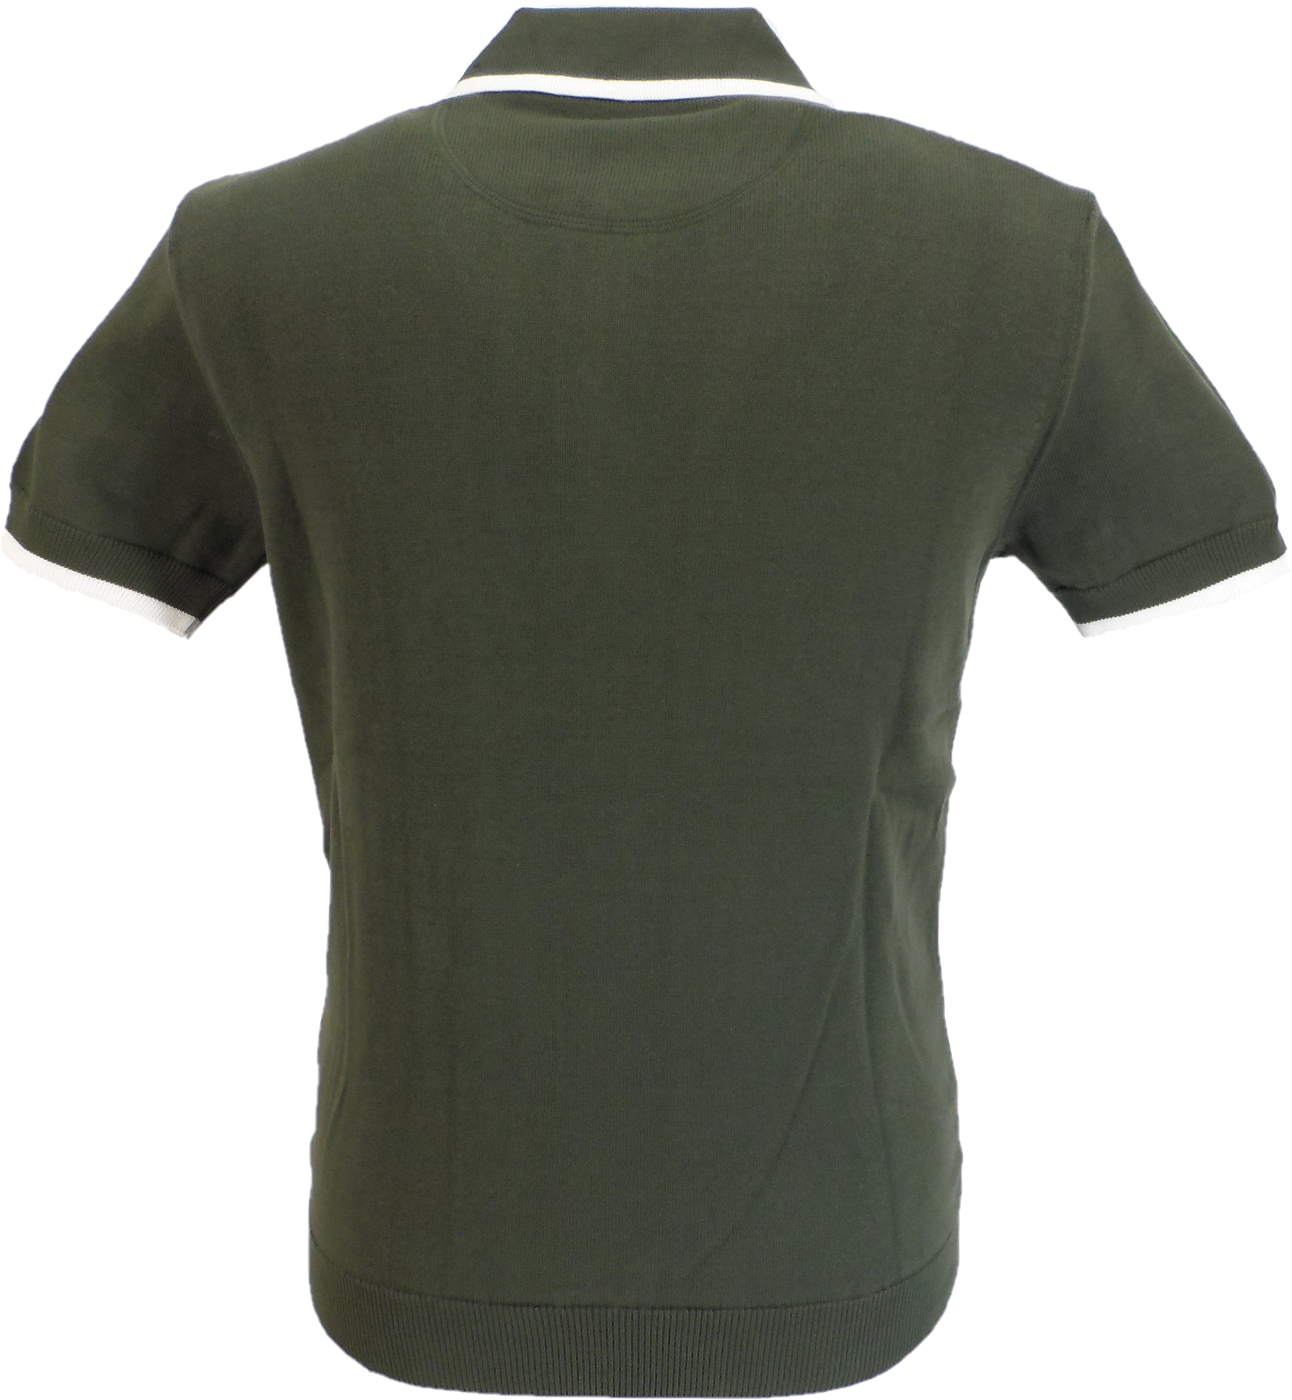 Trojan Herren-Poloshirt aus Strick in Armeegrün mit Reißverschluss und feinen Streifen und Reißverschluss